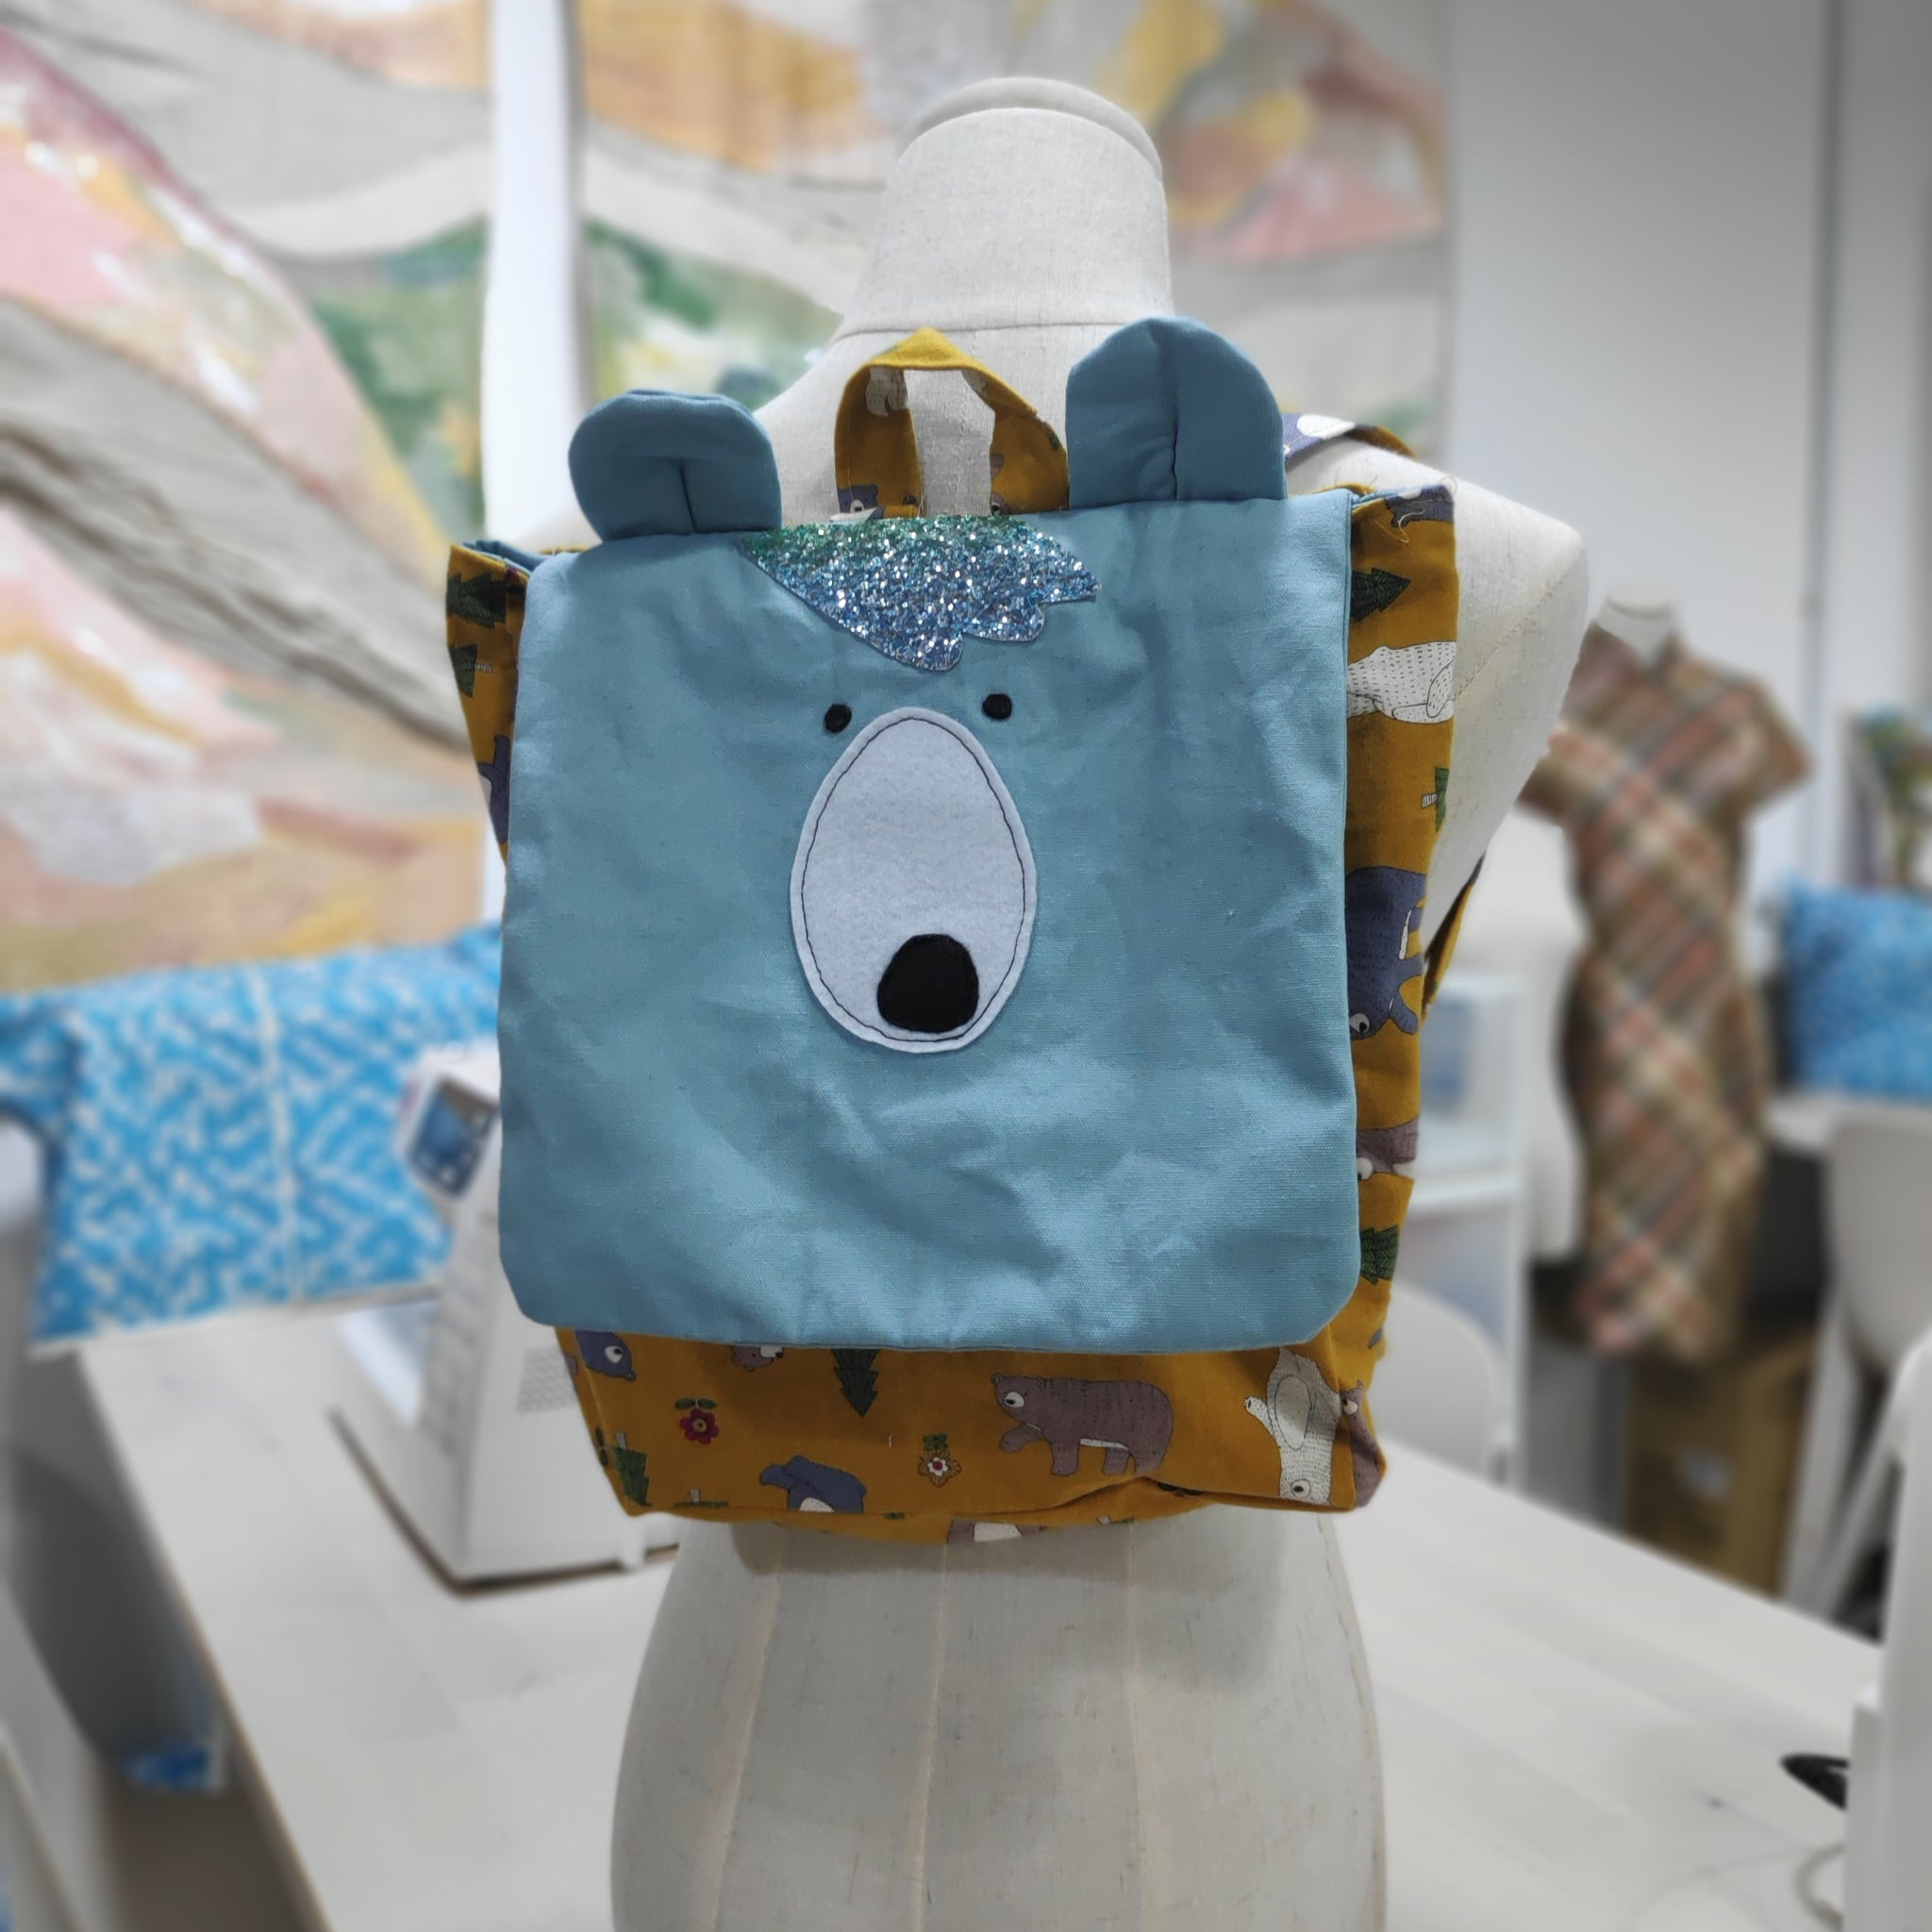 Beginner Parenthood - Bags for Kids*